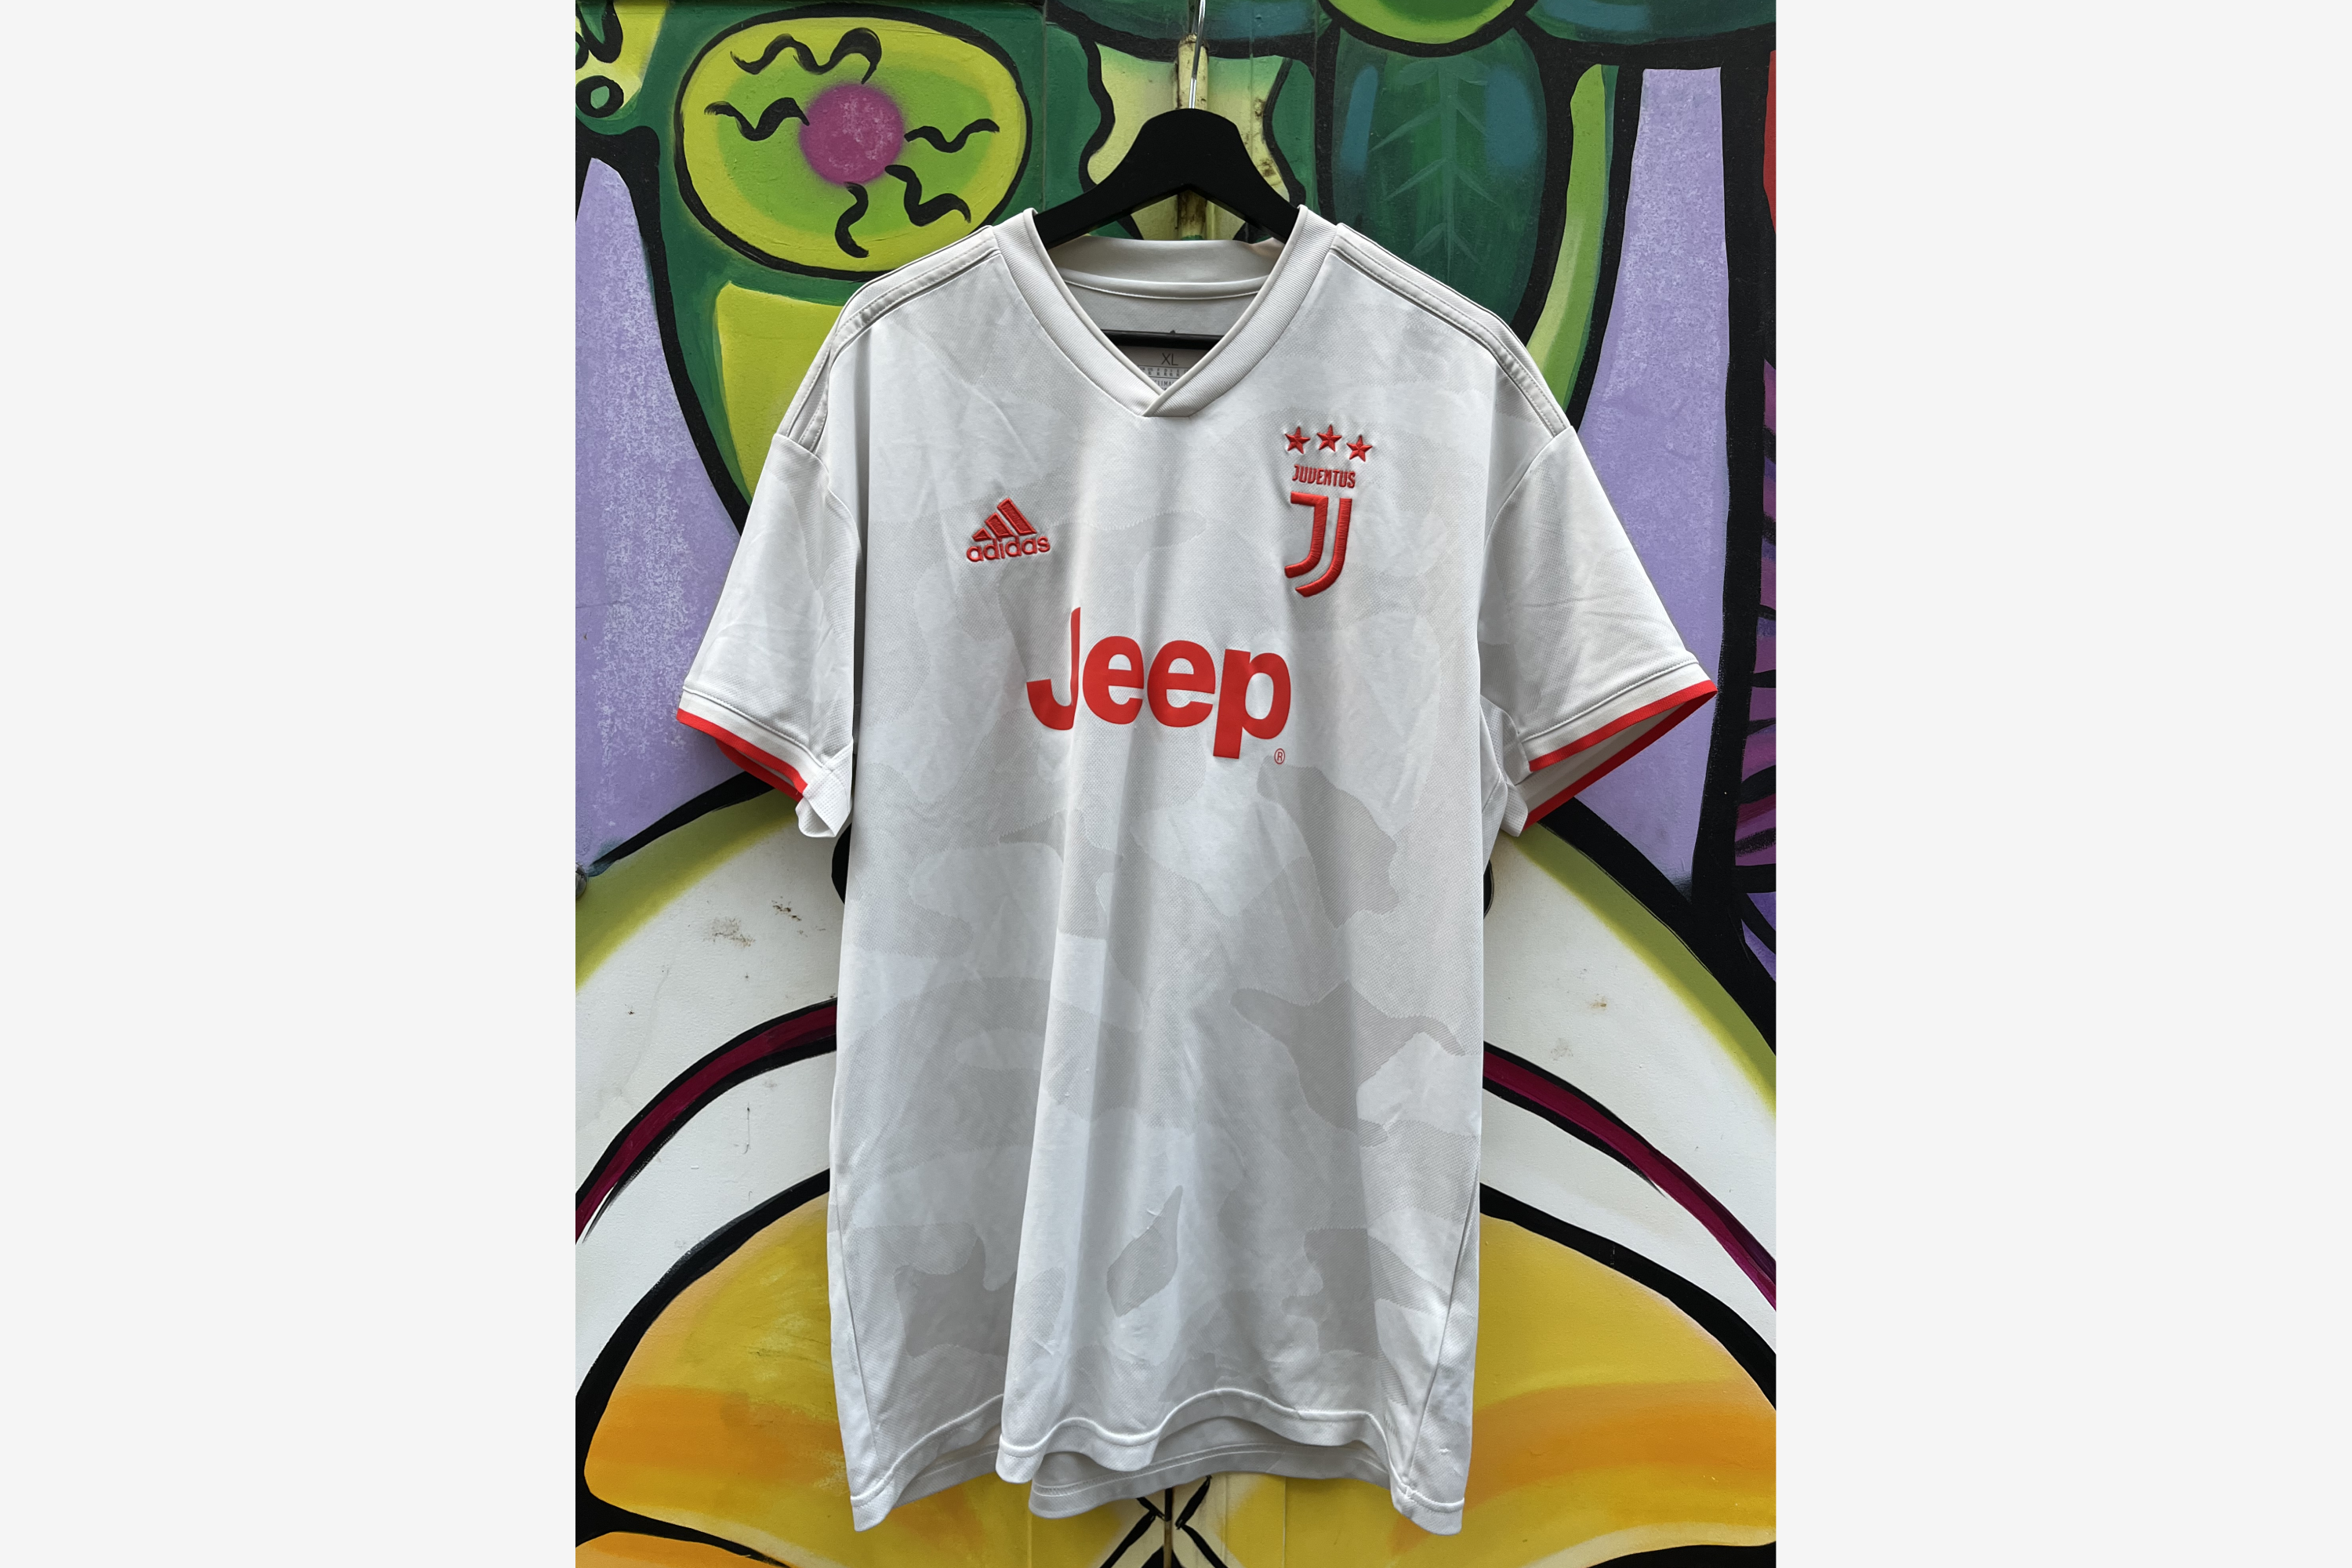 Adidas - Juventus 2019/20 Away Football Shirt